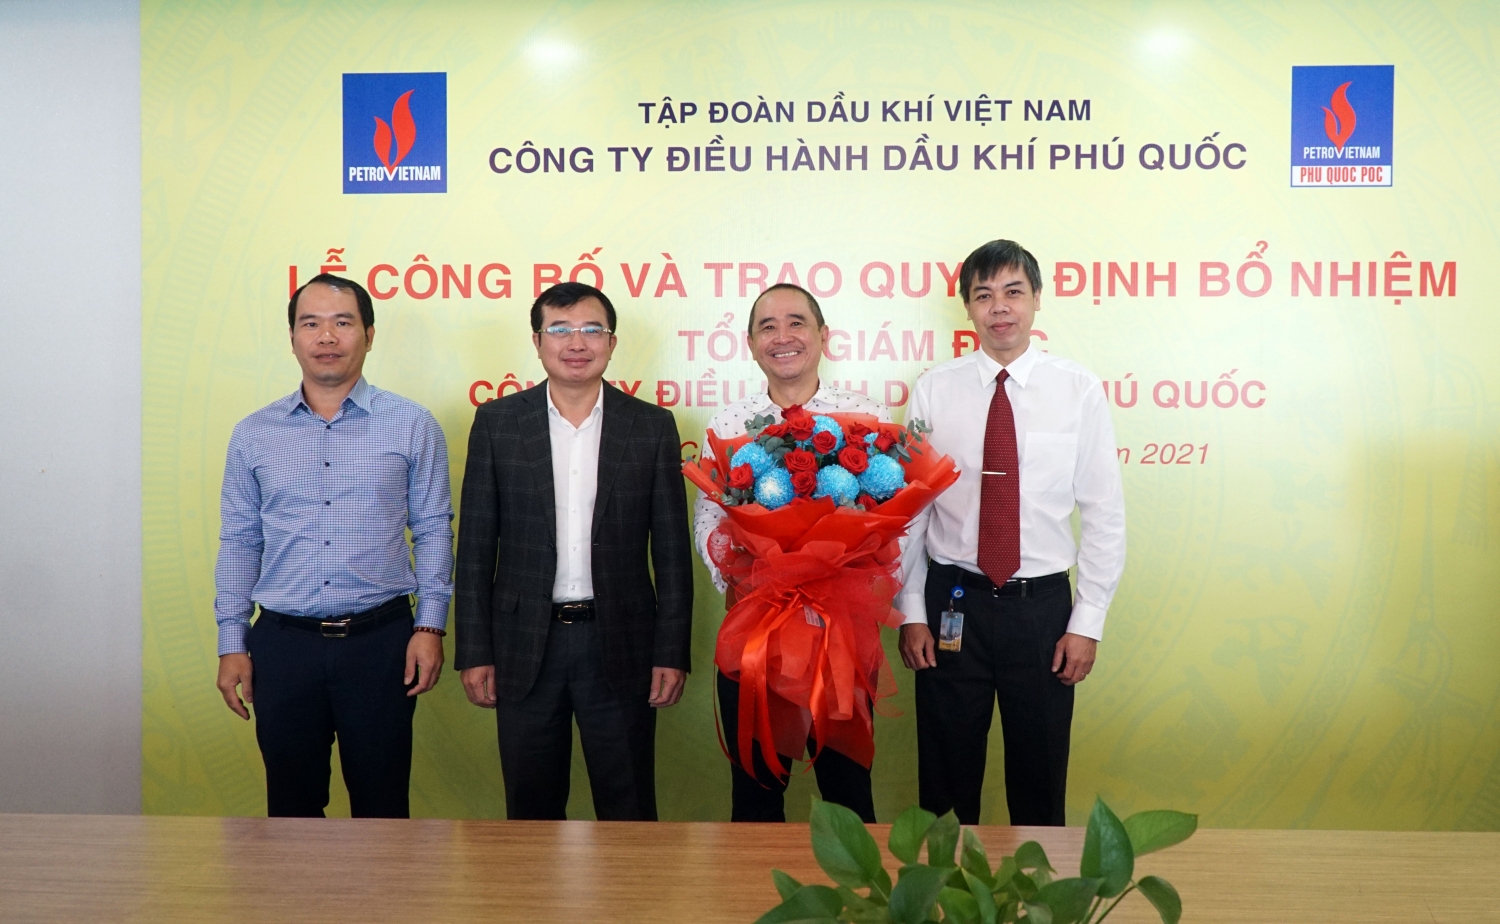 Chúc mừng đồng chí Bùi Vạn Thuận nhận nhiệm vụ Tổng Giám đốc Phú Quốc POC